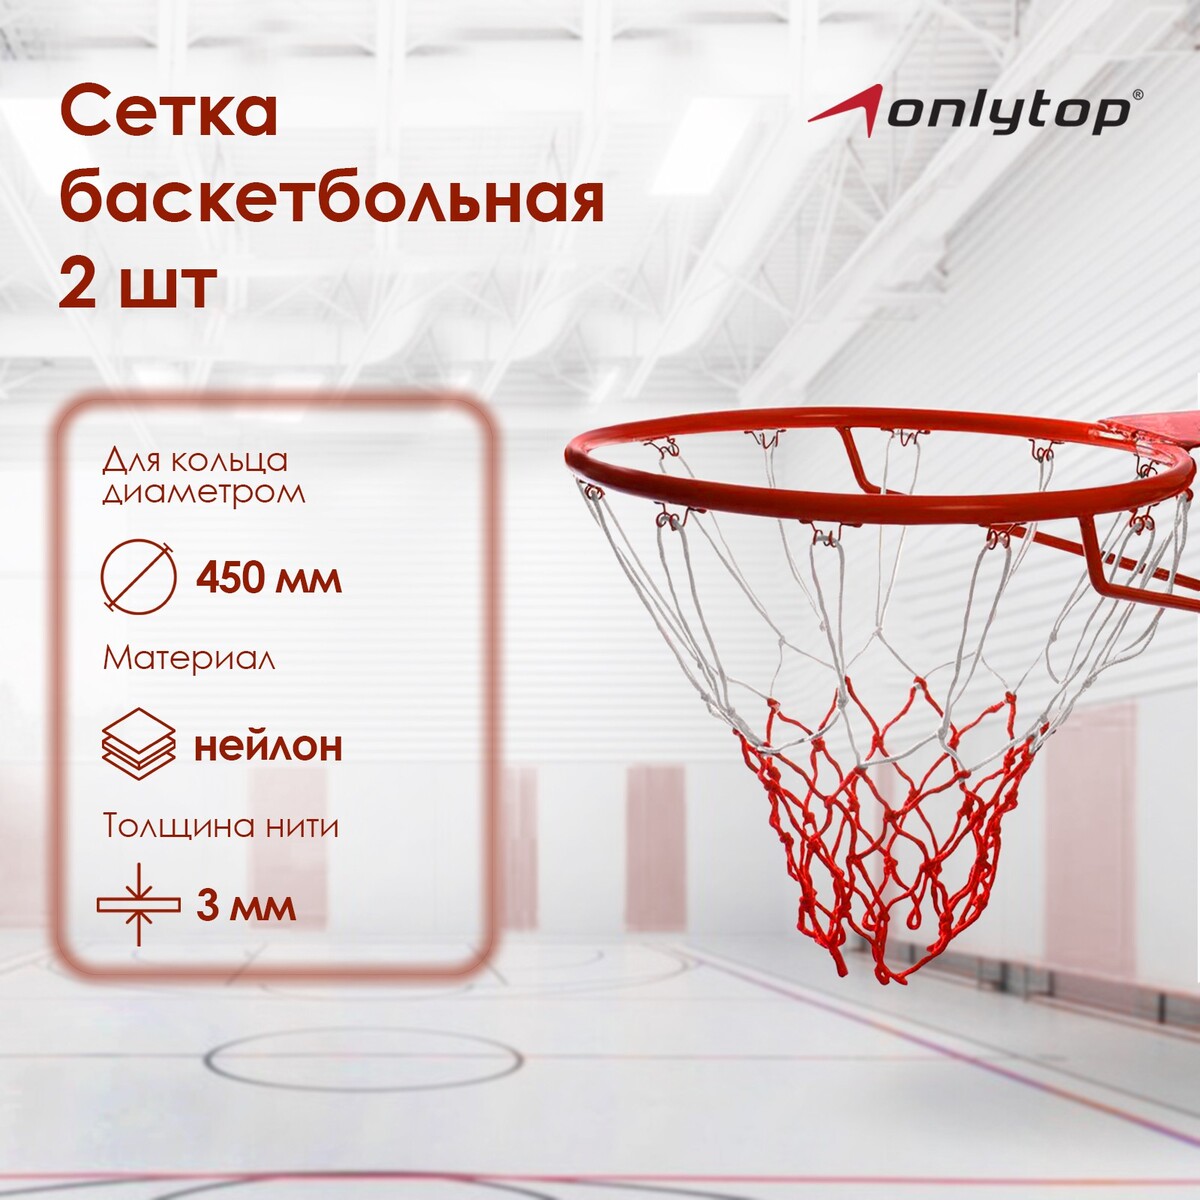 Сетка баскетбольная onlytop, 50 см, нить 3 мм, 2 шт. сетка волейбольная onlytop с тросом нить 1 5 мм 9 6х0 85 м